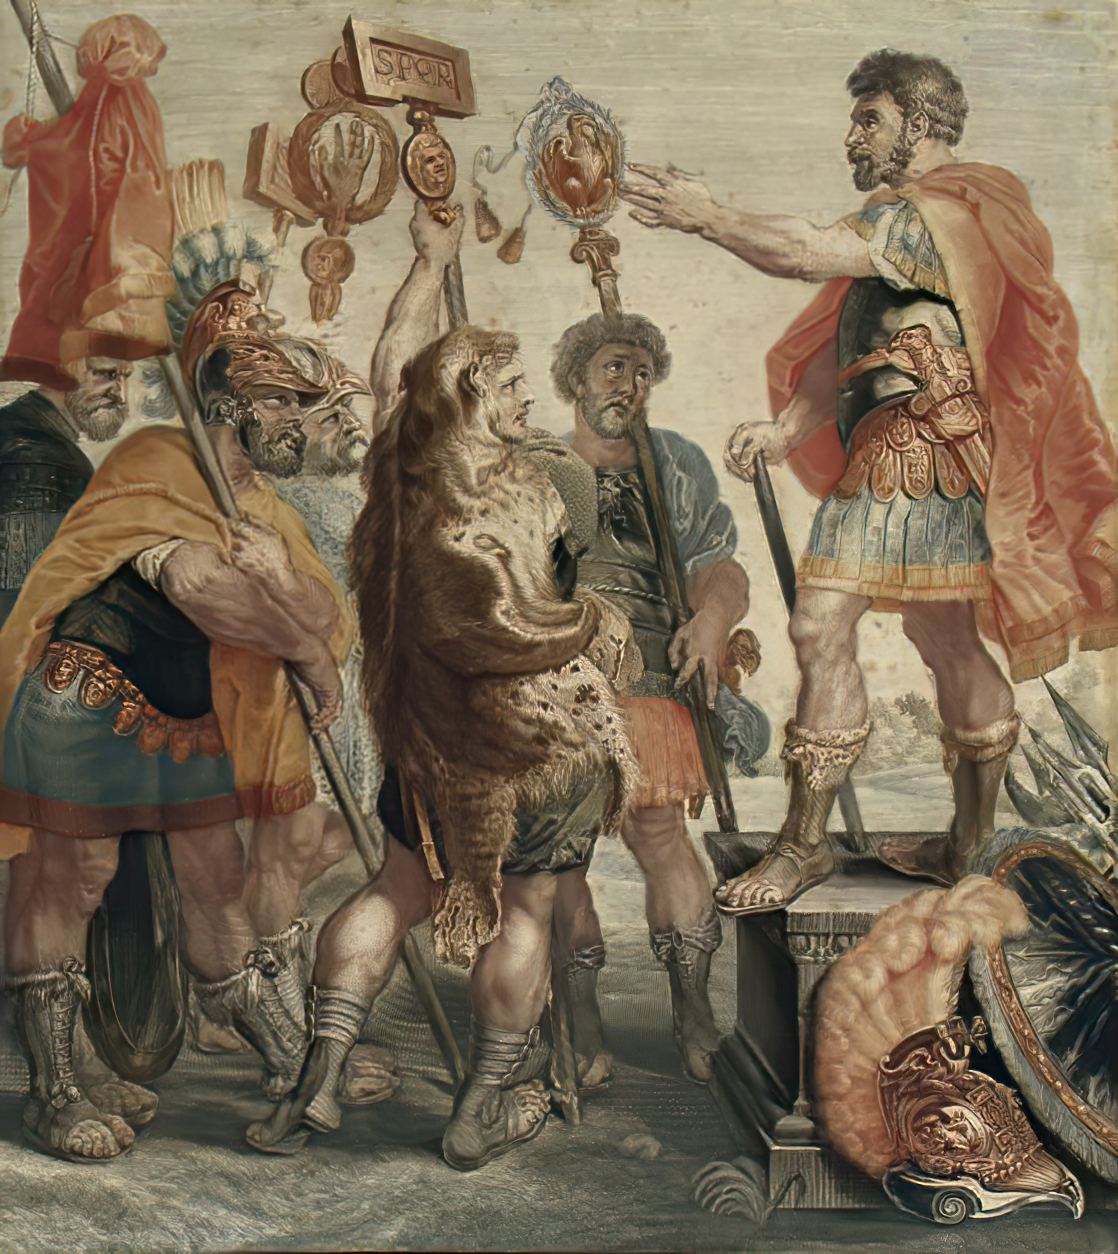 Roman Times: The Sacrifice of Publius Decius Mus